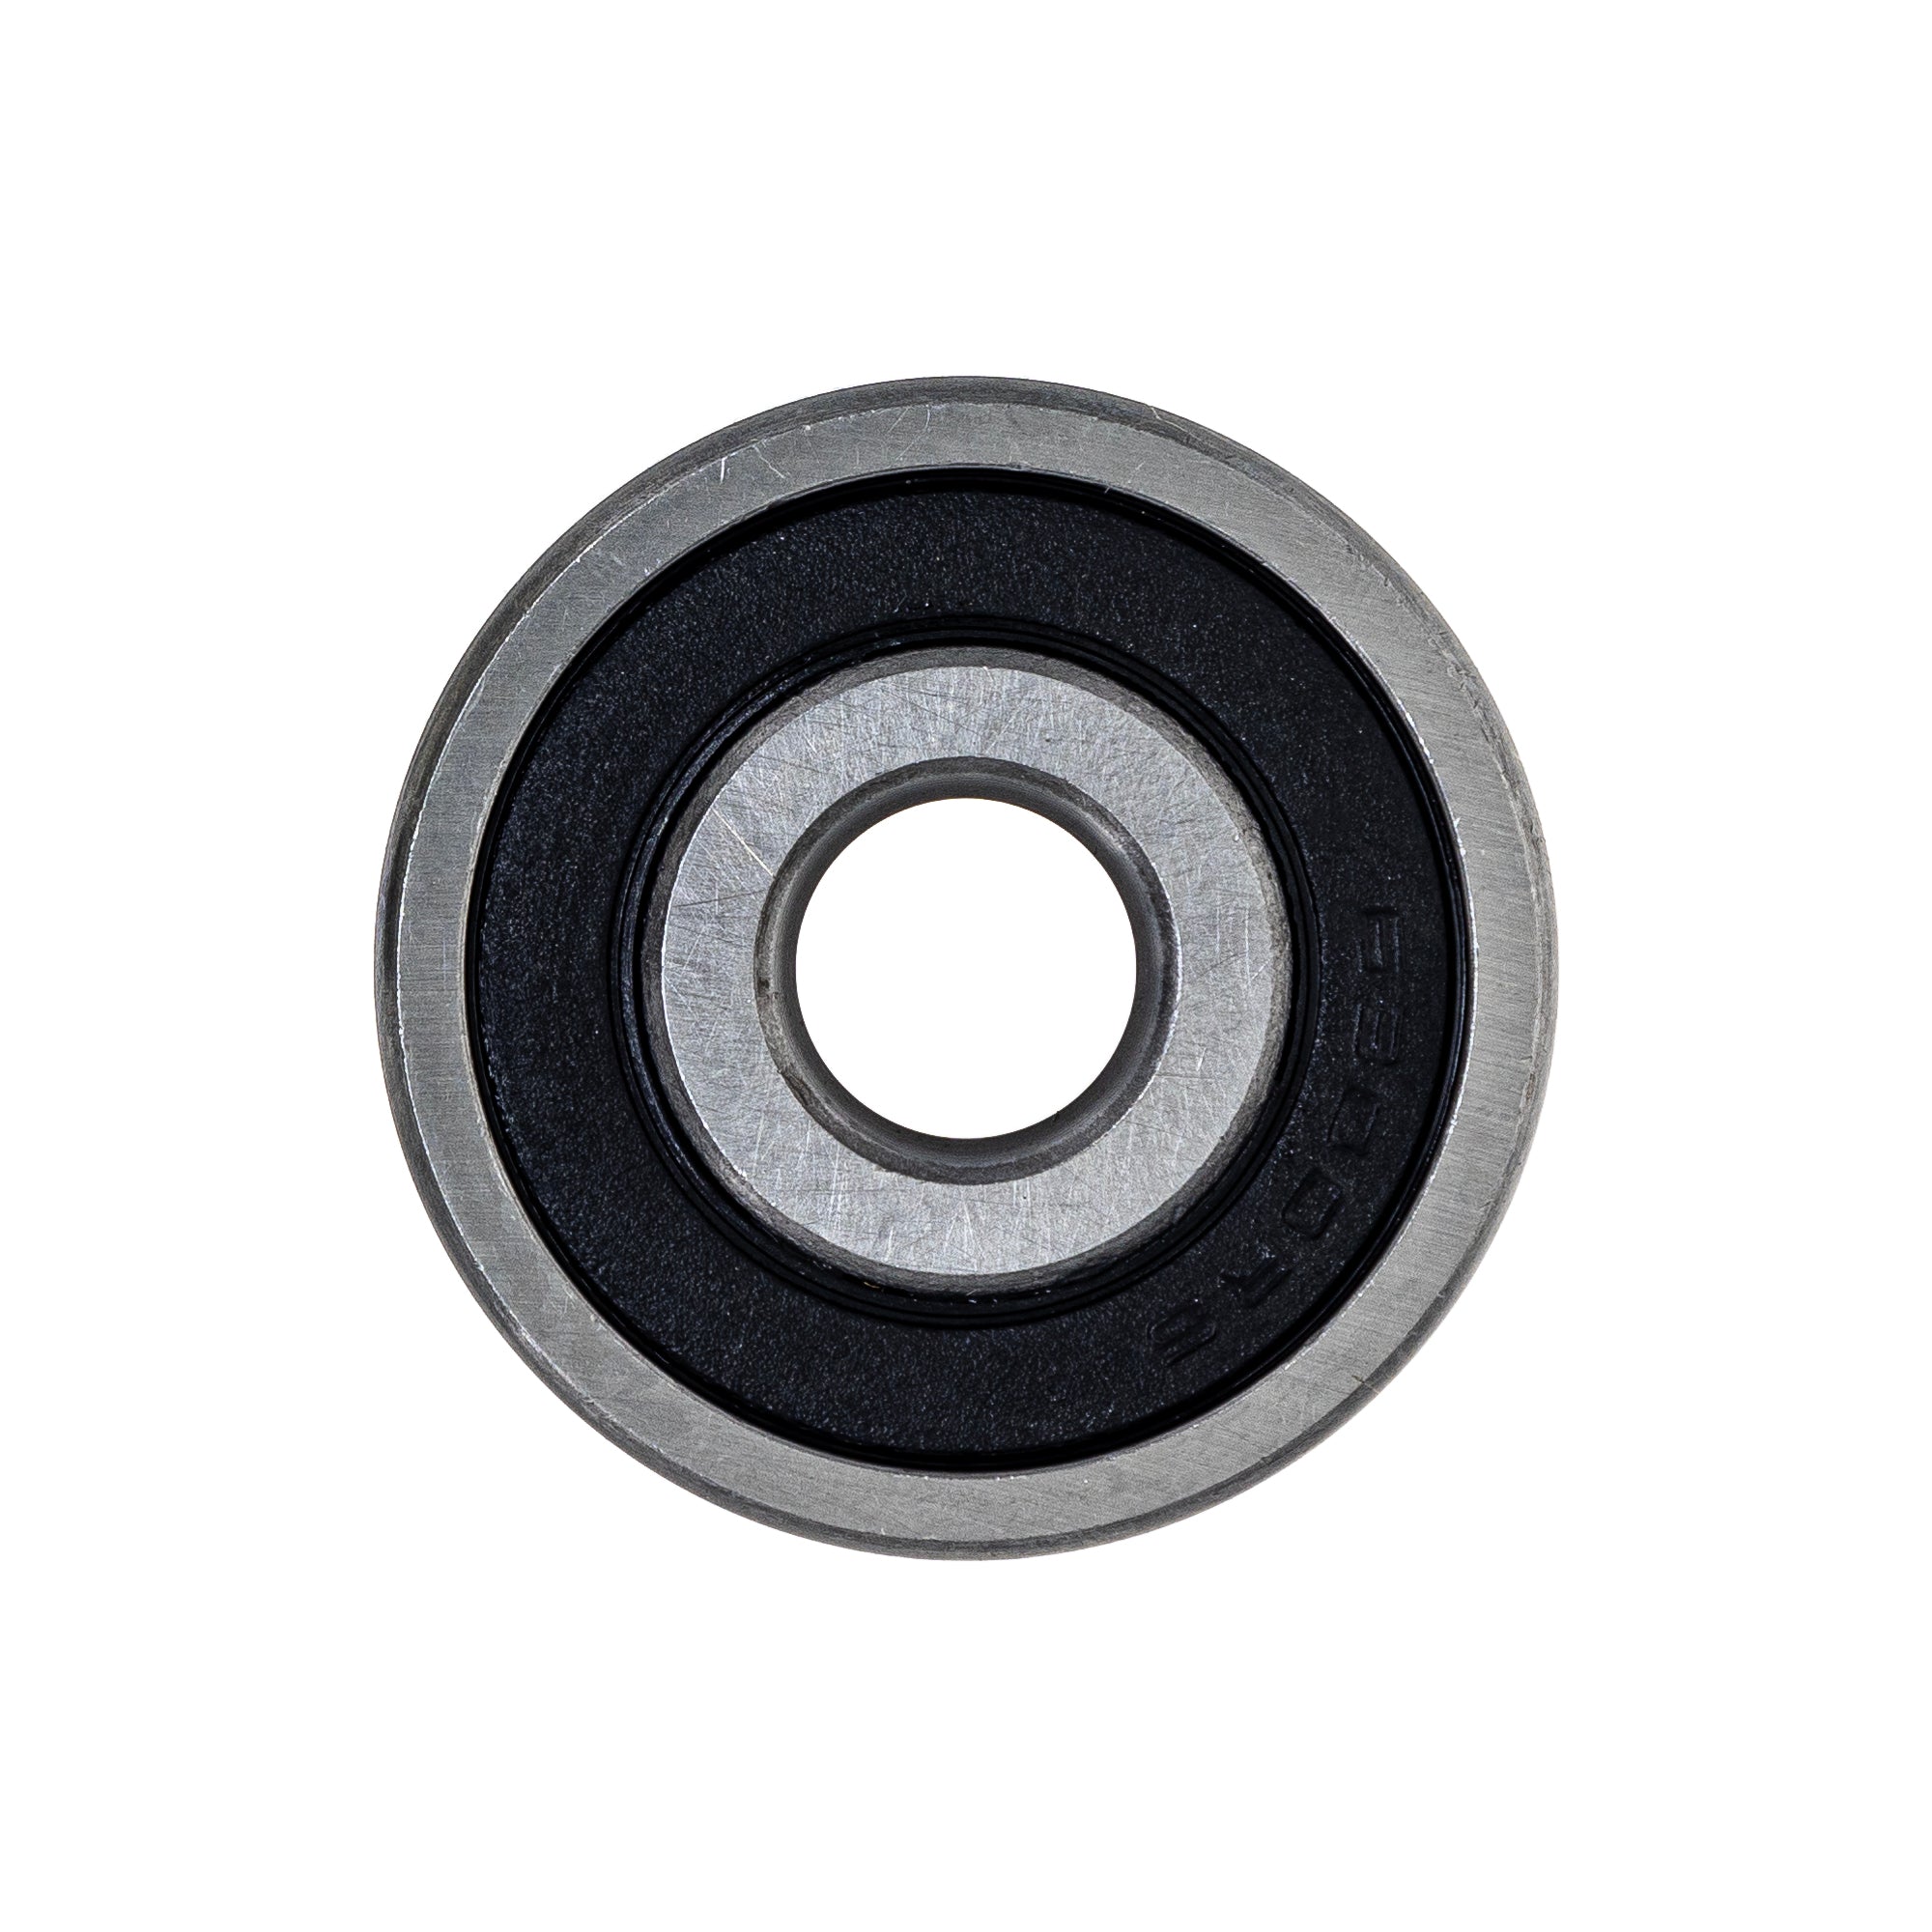 Wheel Bearing for Yamaha Banshsee 350 93306-30003-00 10x35x11mm 2 Pack